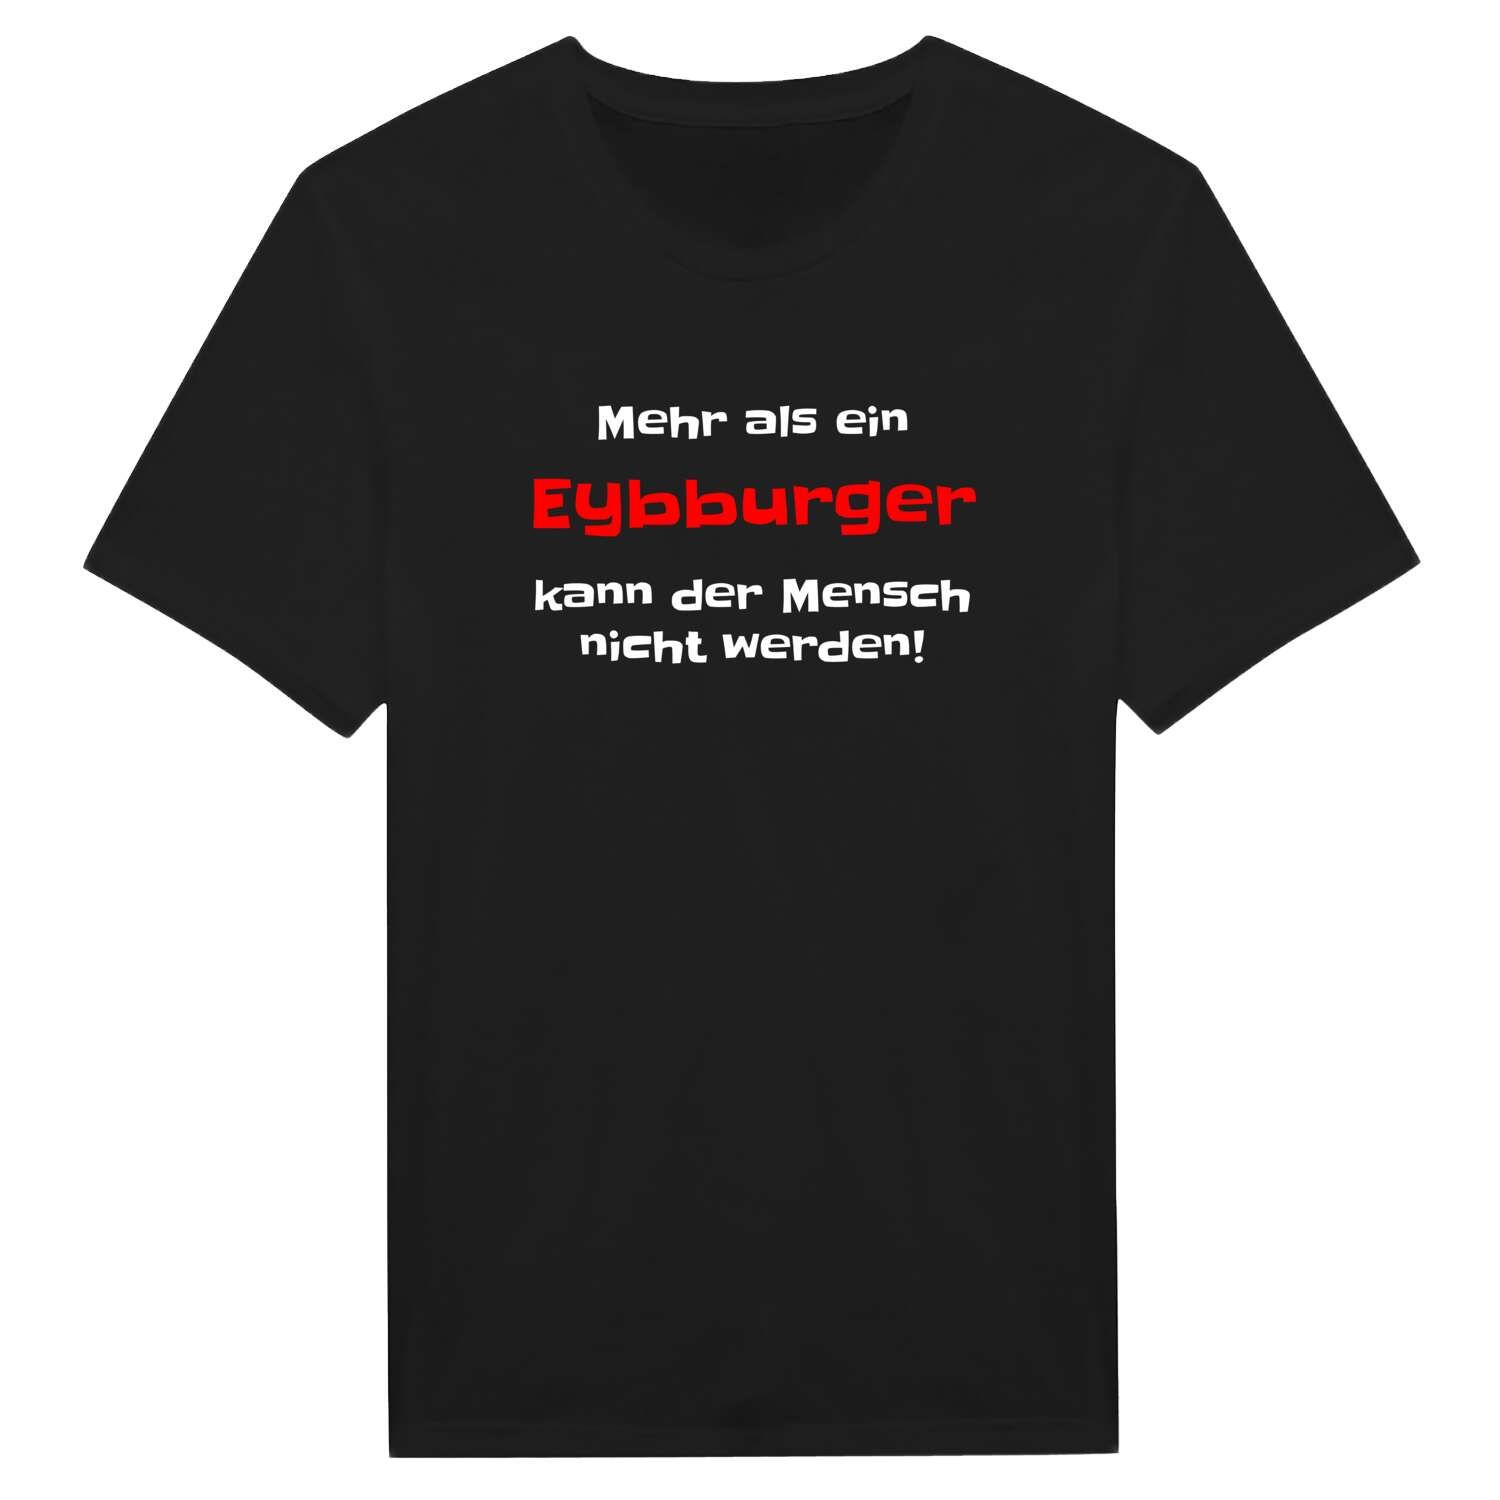 Eybburg T-Shirt »Mehr als ein«